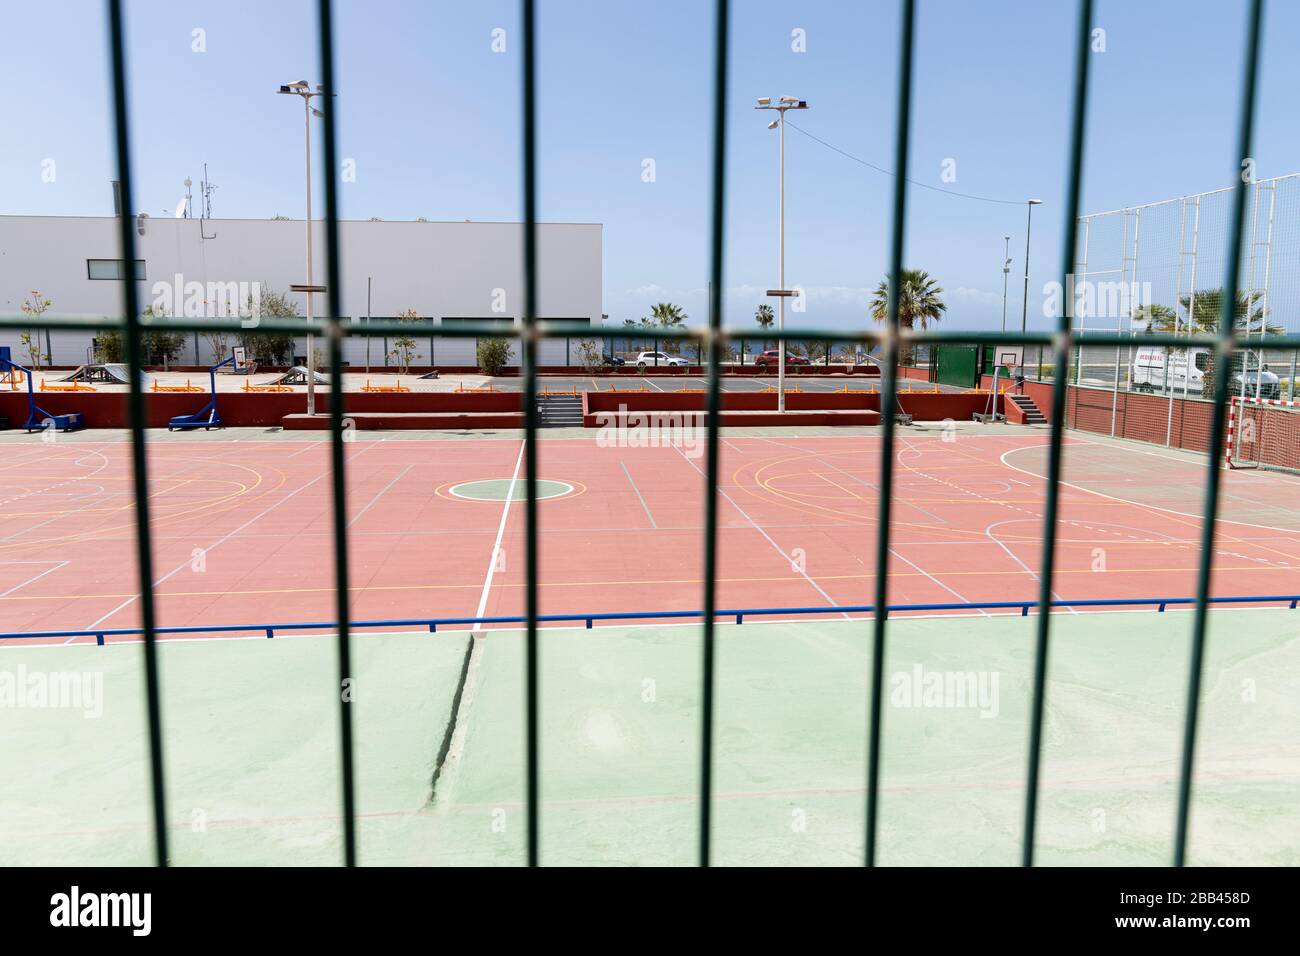 Centro deportivo vacío durante el cierre del coronavirus, normalmente ocupado con jugadores de fútbol o baloncesto. Playa San Juan, Tenerife, Islas Canarias, Foto de stock